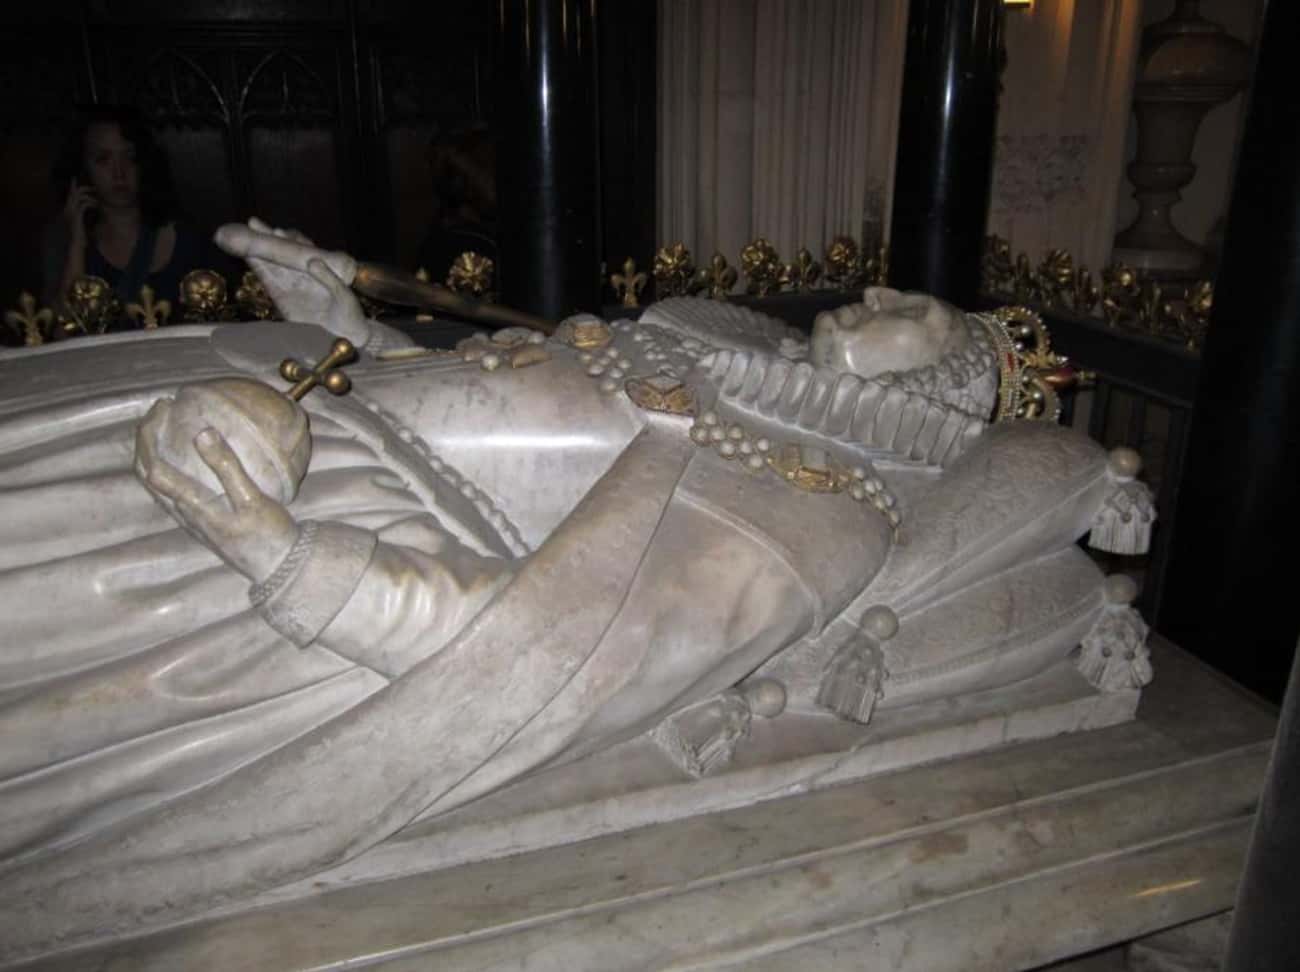 Где похоронены короли. Вестминстерское аббатство могила Елизаветы 1. Вестминстерское аббатство могила Елизаветы 2. Надгробие королевы Елизаветы i Вестминстерском аббатстве.